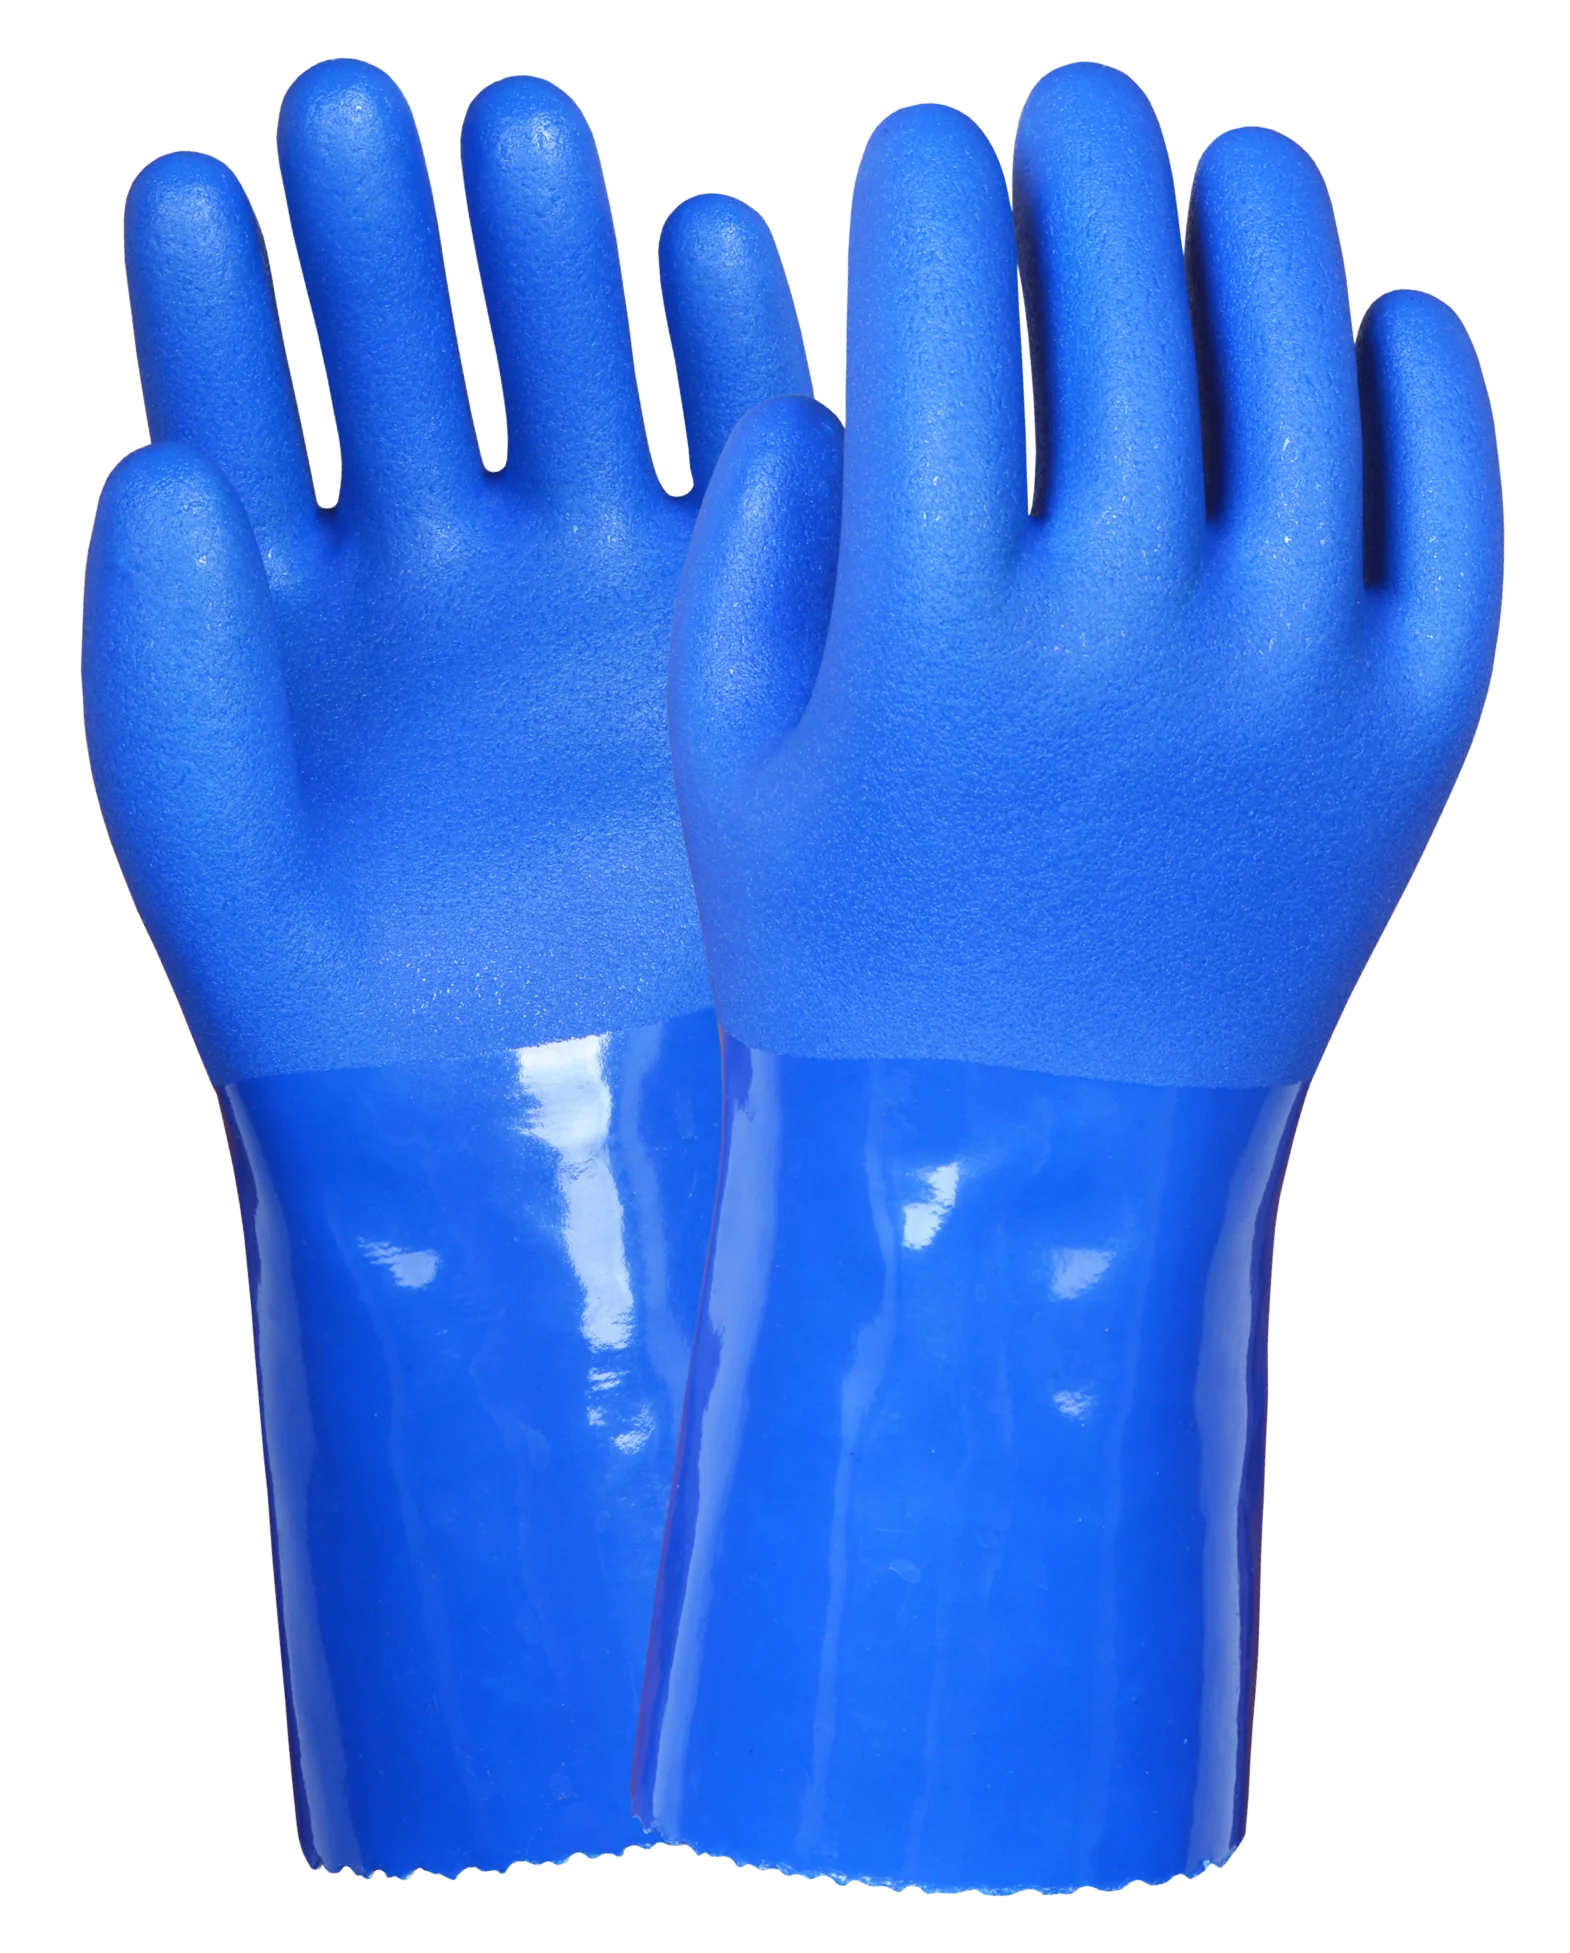 Перчатки пвх 10 размер. Gward Sandy long химически стойкие перчатки с длинным рукавом артикул: pvc014. Перчатки Size 10 хим ПВХ. Перчатки нитриловые химически стойкие. Перчатка ПВХ.